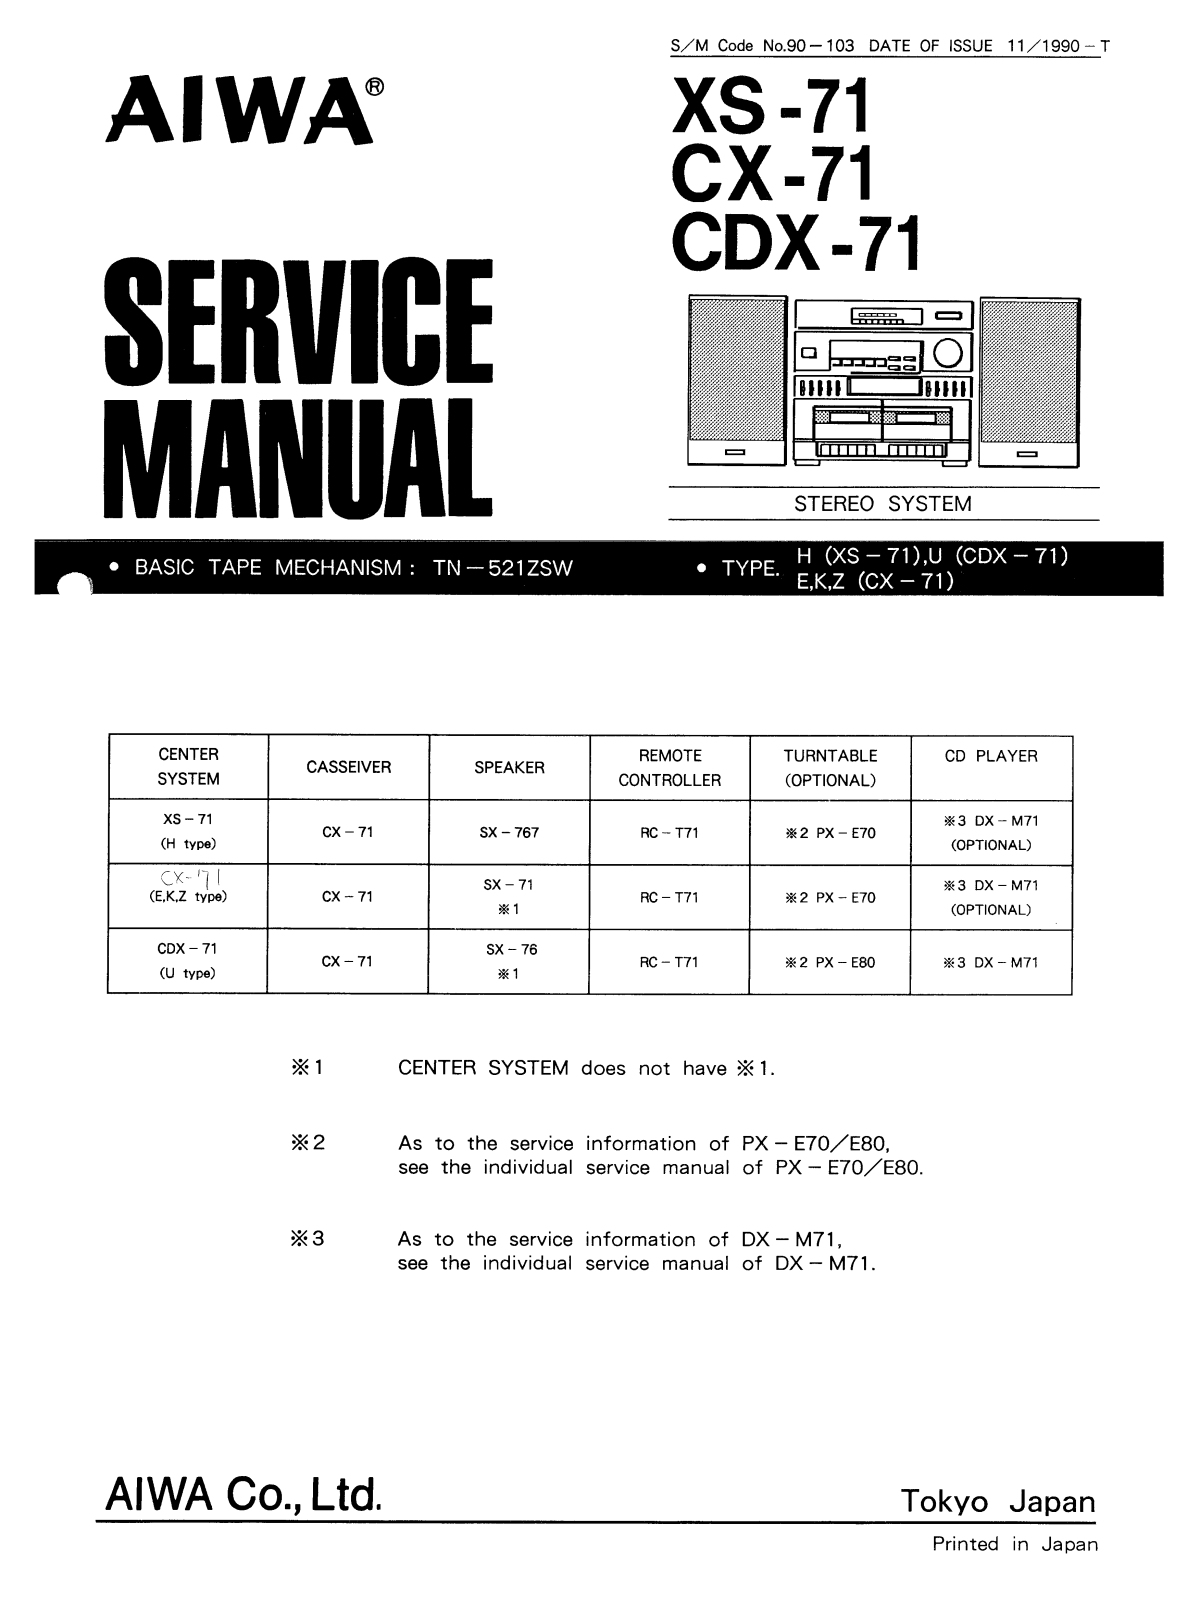 Aiwa XS-71, CX-71, CDX-71 Service Manual